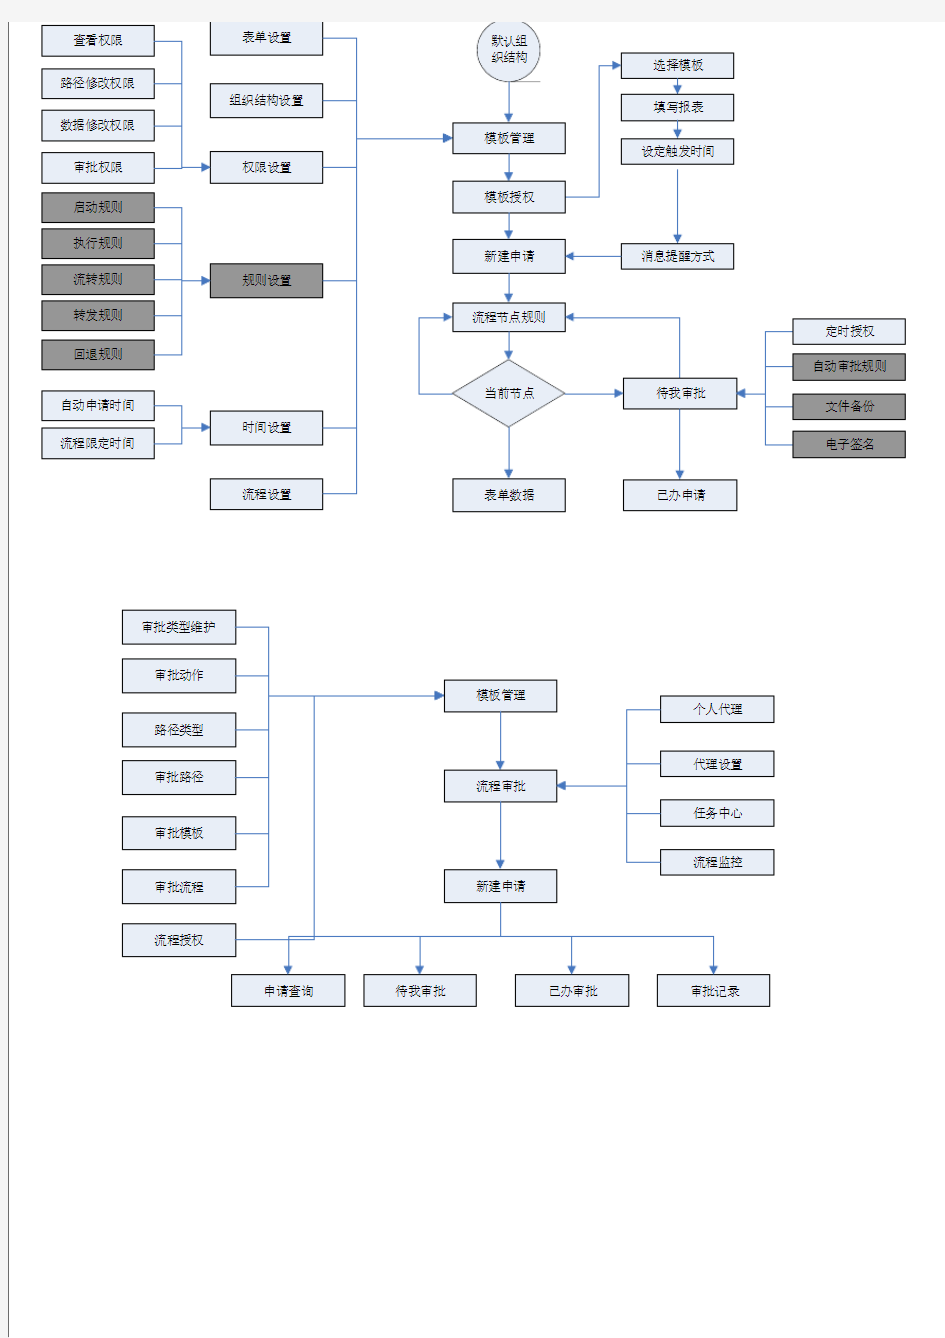 工作流审核系统业务流程图